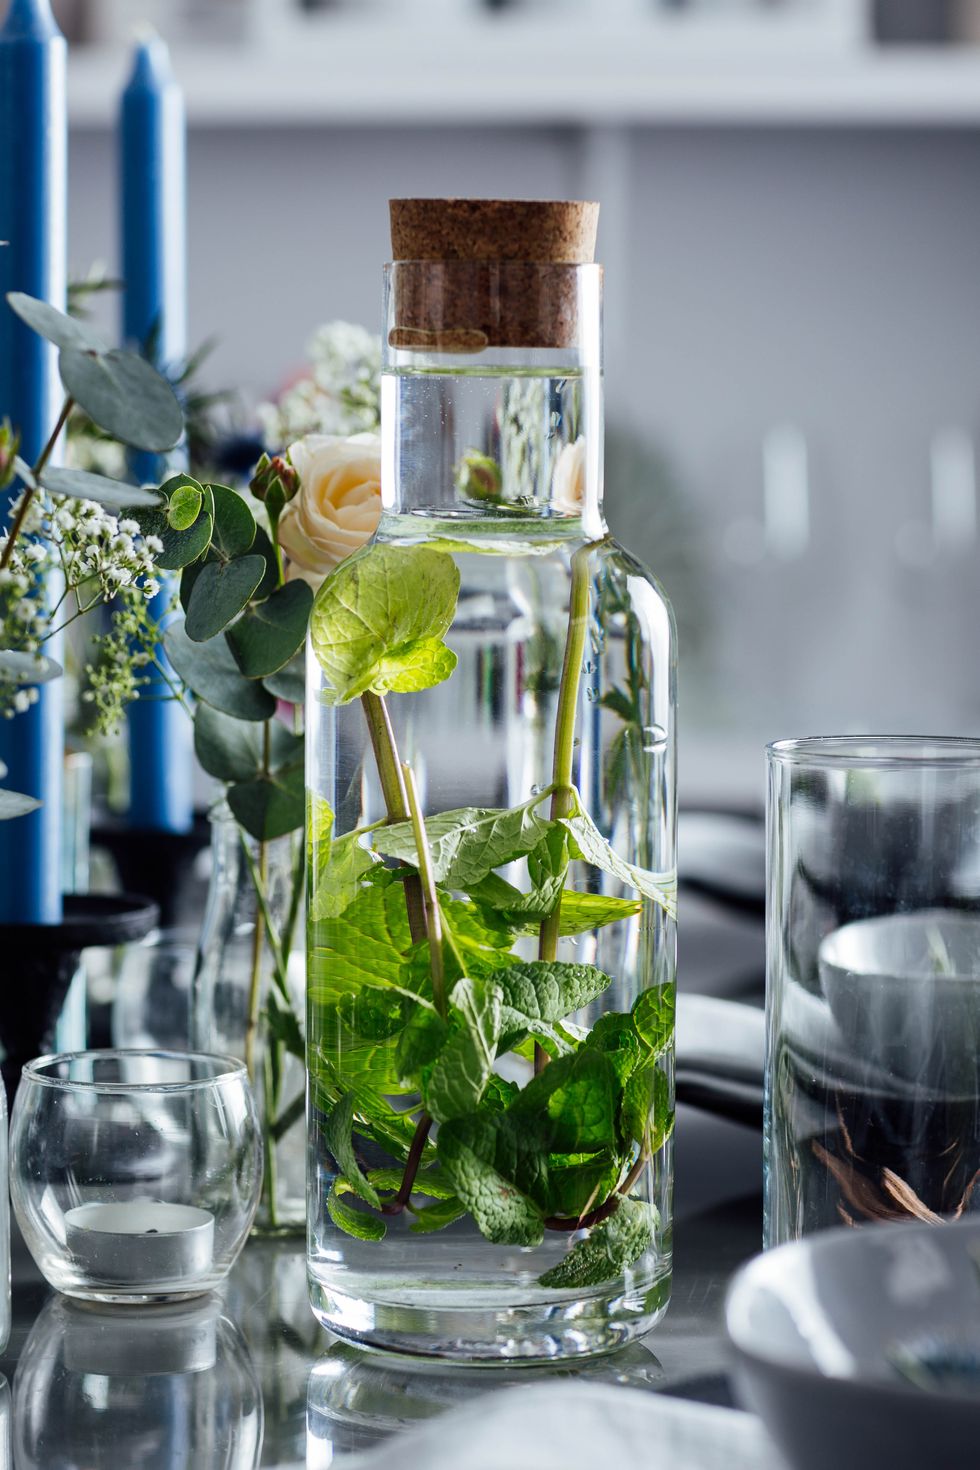 Plant greenery in glass bottle